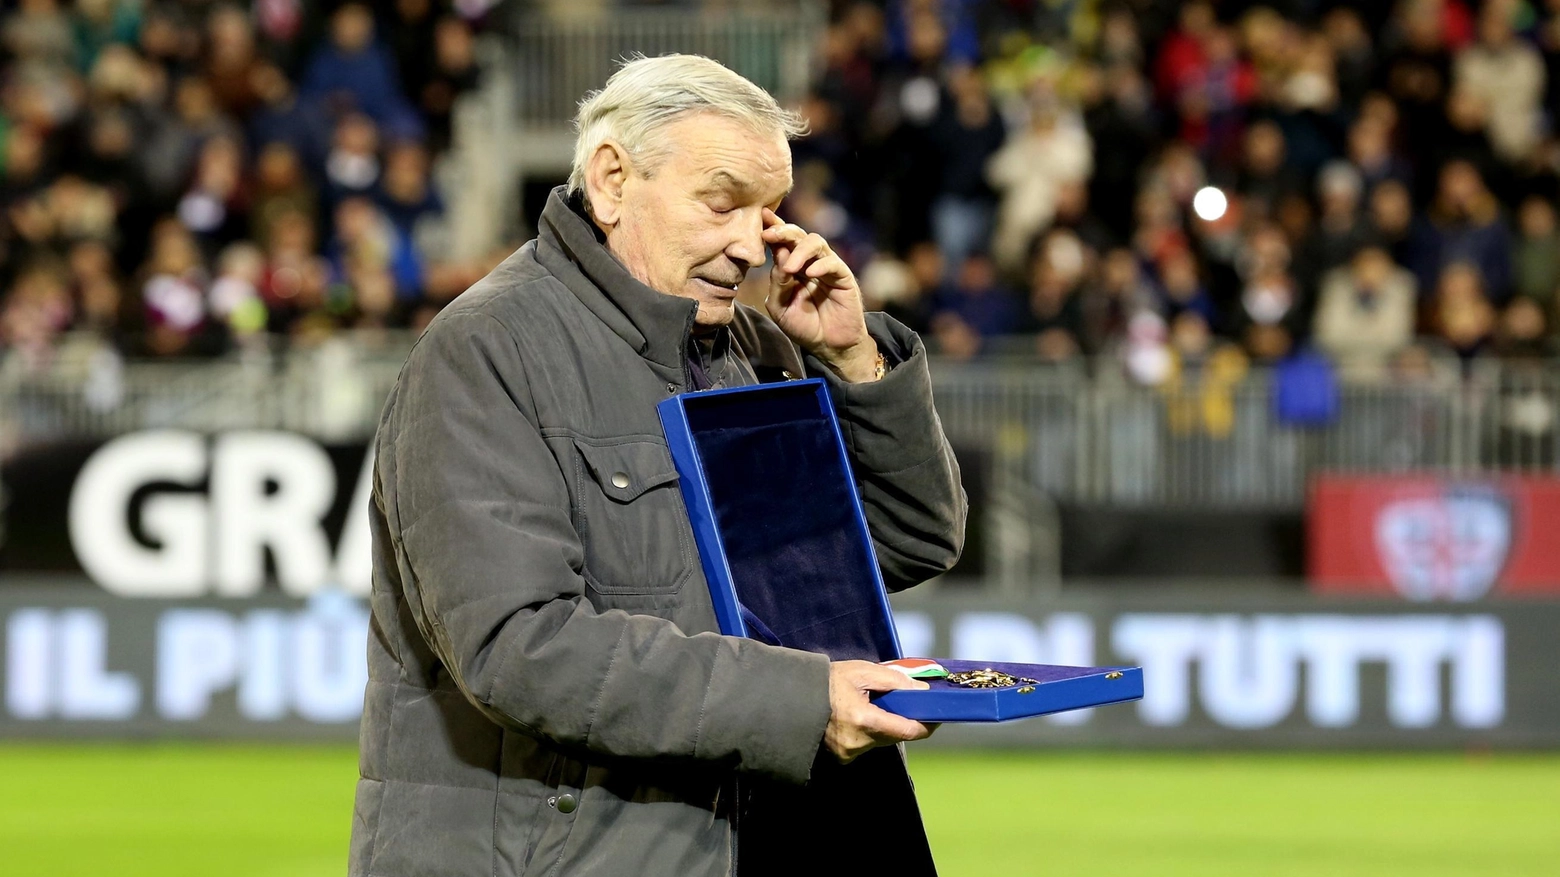 L'icona del calcio italiano, Gigi Riva, noto per il suo straordinario record di gol sia in nazionale che nel Cagliari, è venuto a mancare all'età di 79 anni.